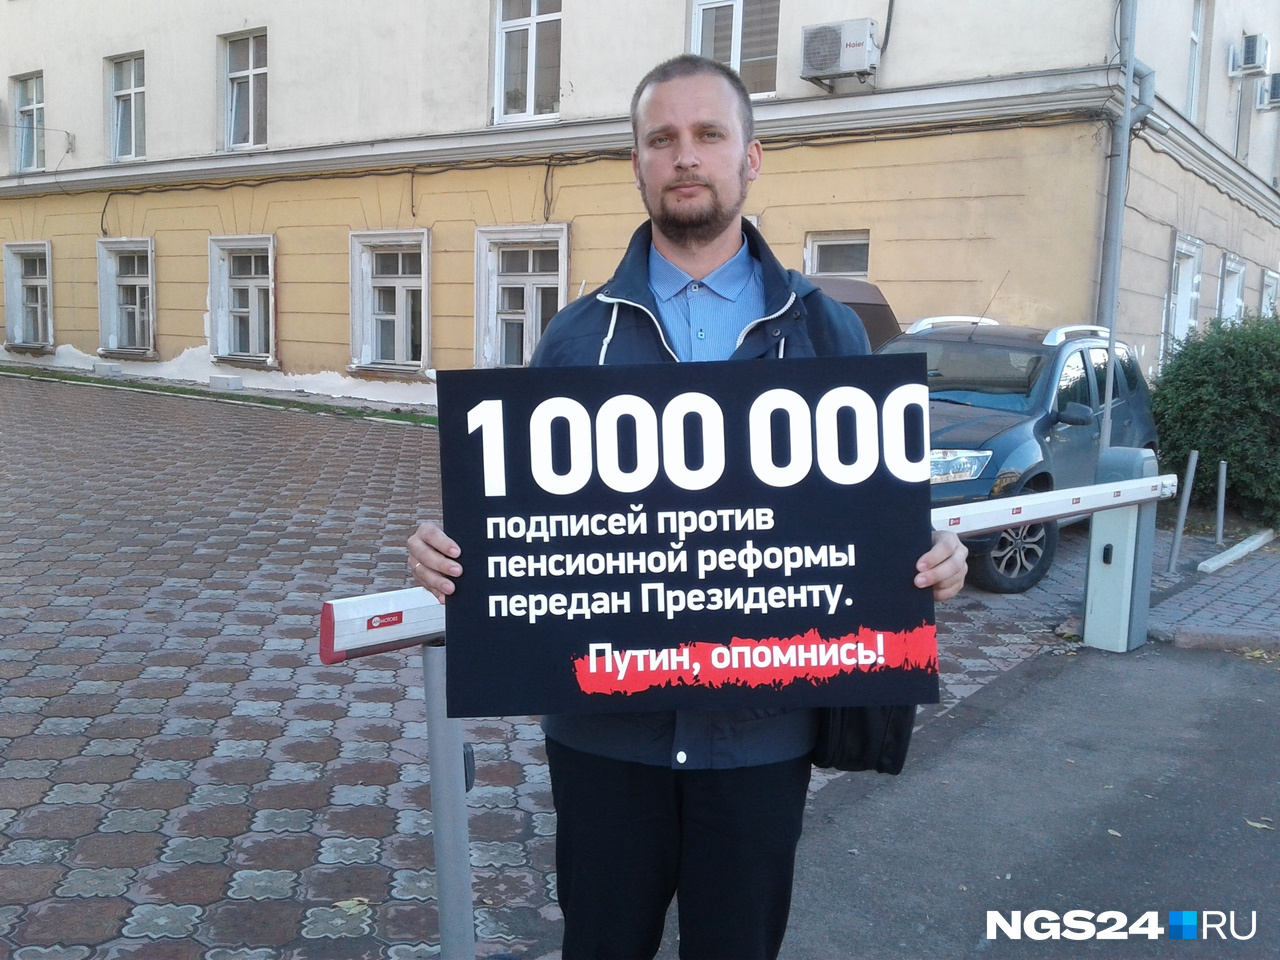 Дмитрий вышел на улицу, чтобы обратить внимание горожан и СМИ